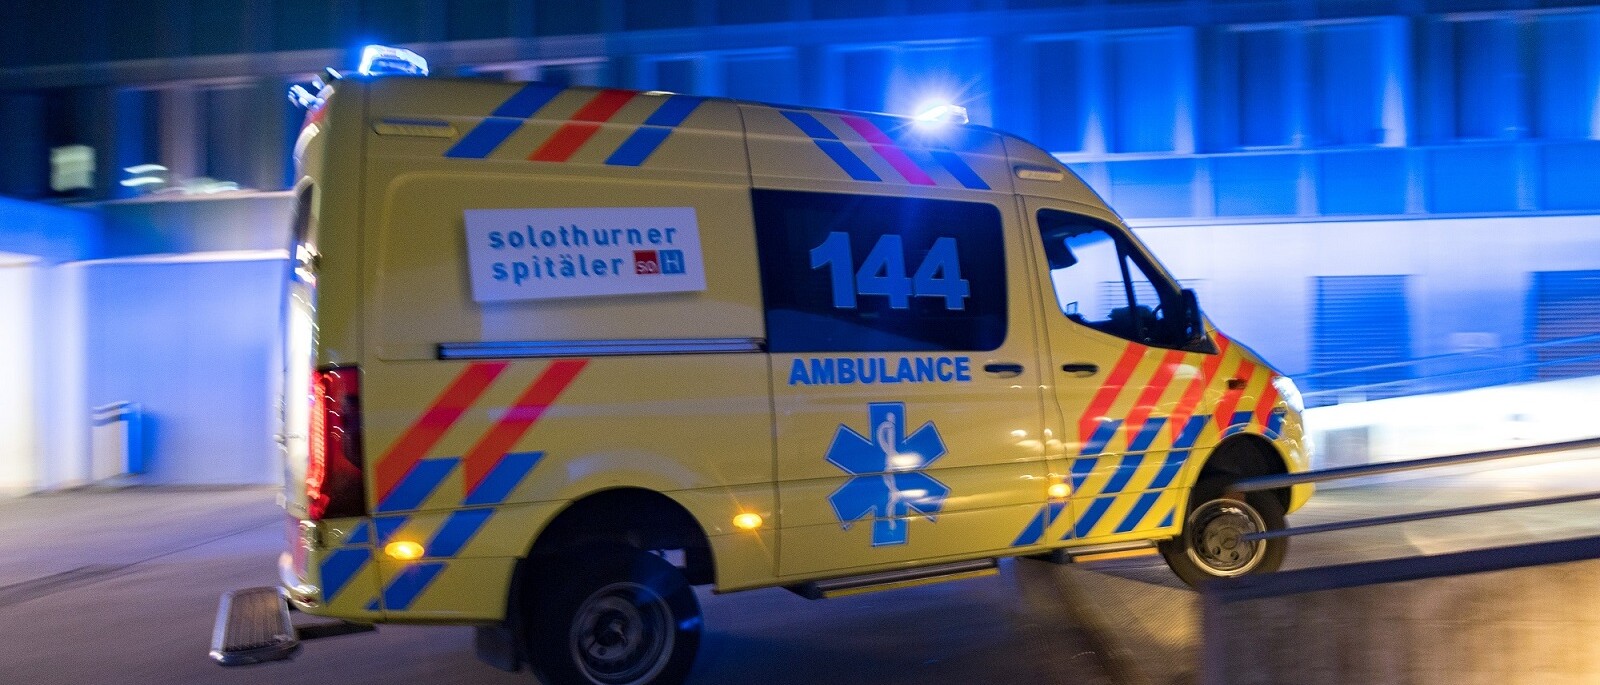 Rettungswagen fährt mit Blaulicht